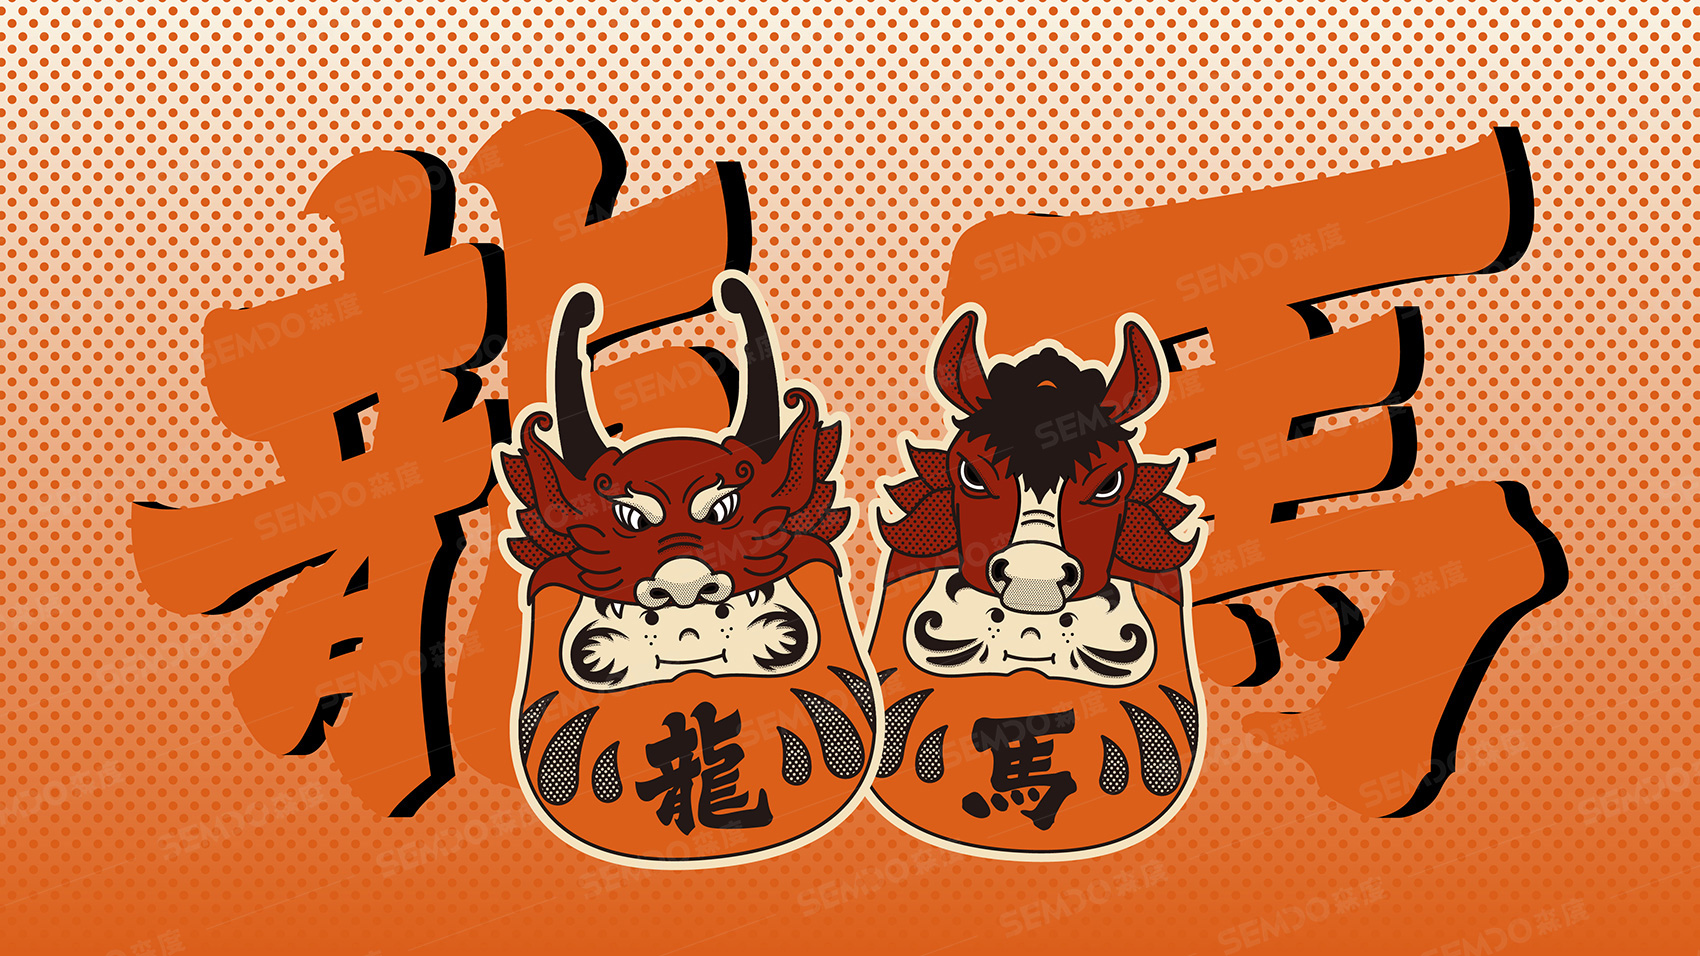 龙马日式烧肉VI设计 上海VI设计 企业logo设计 上海logo设计 宿迁logo设计 餐饮logo设计